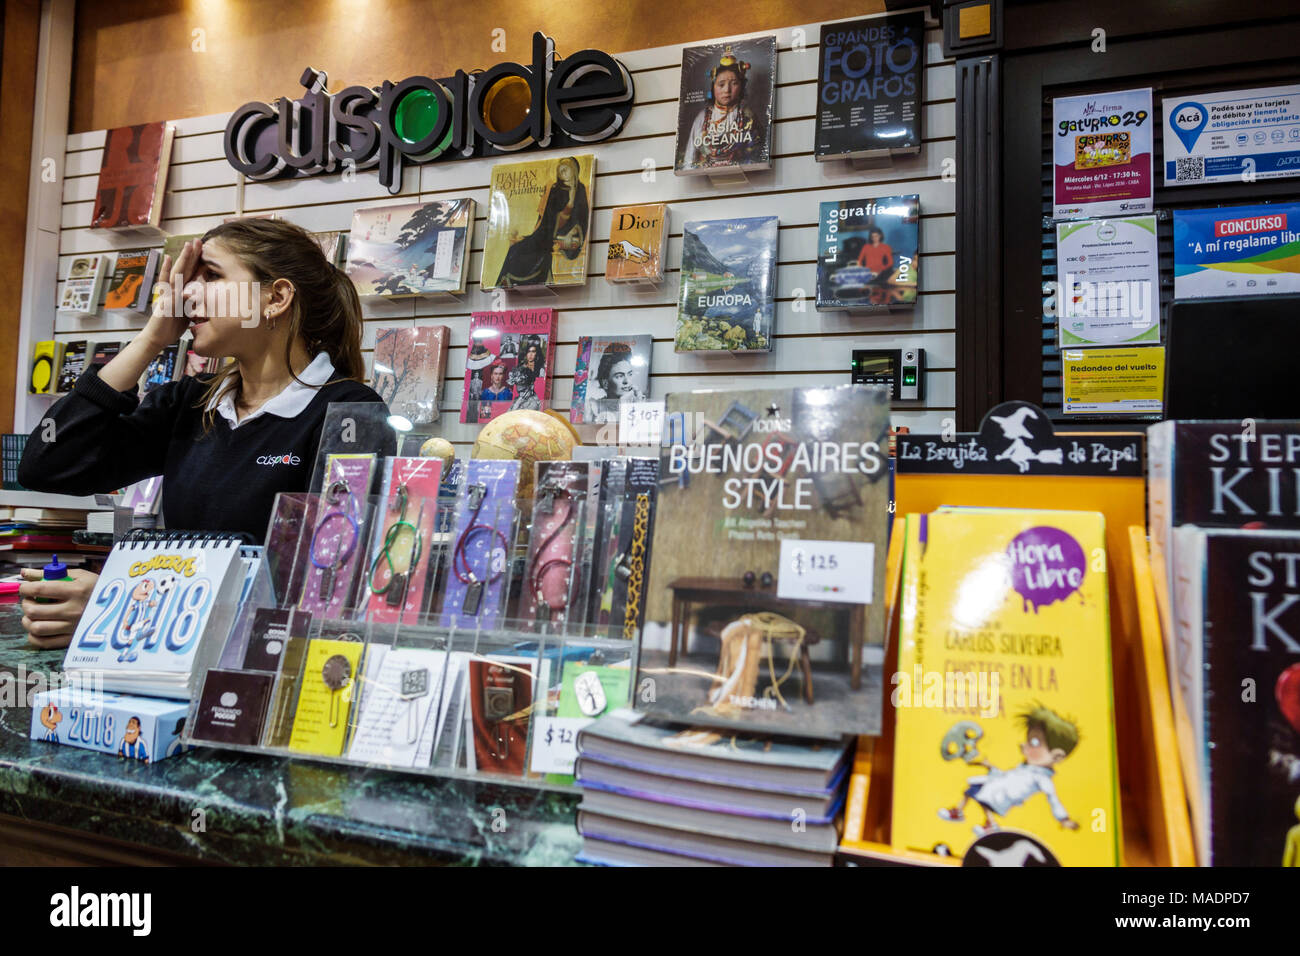 Buenos Aires Argentina, centro commerciale Recoleta, libreria Libreria Cuspide Books, interno interno, vendita al dettaglio, cassiere, ragazza ragazze, femmina bambini bambini bambini bambini bambini giovani Foto Stock